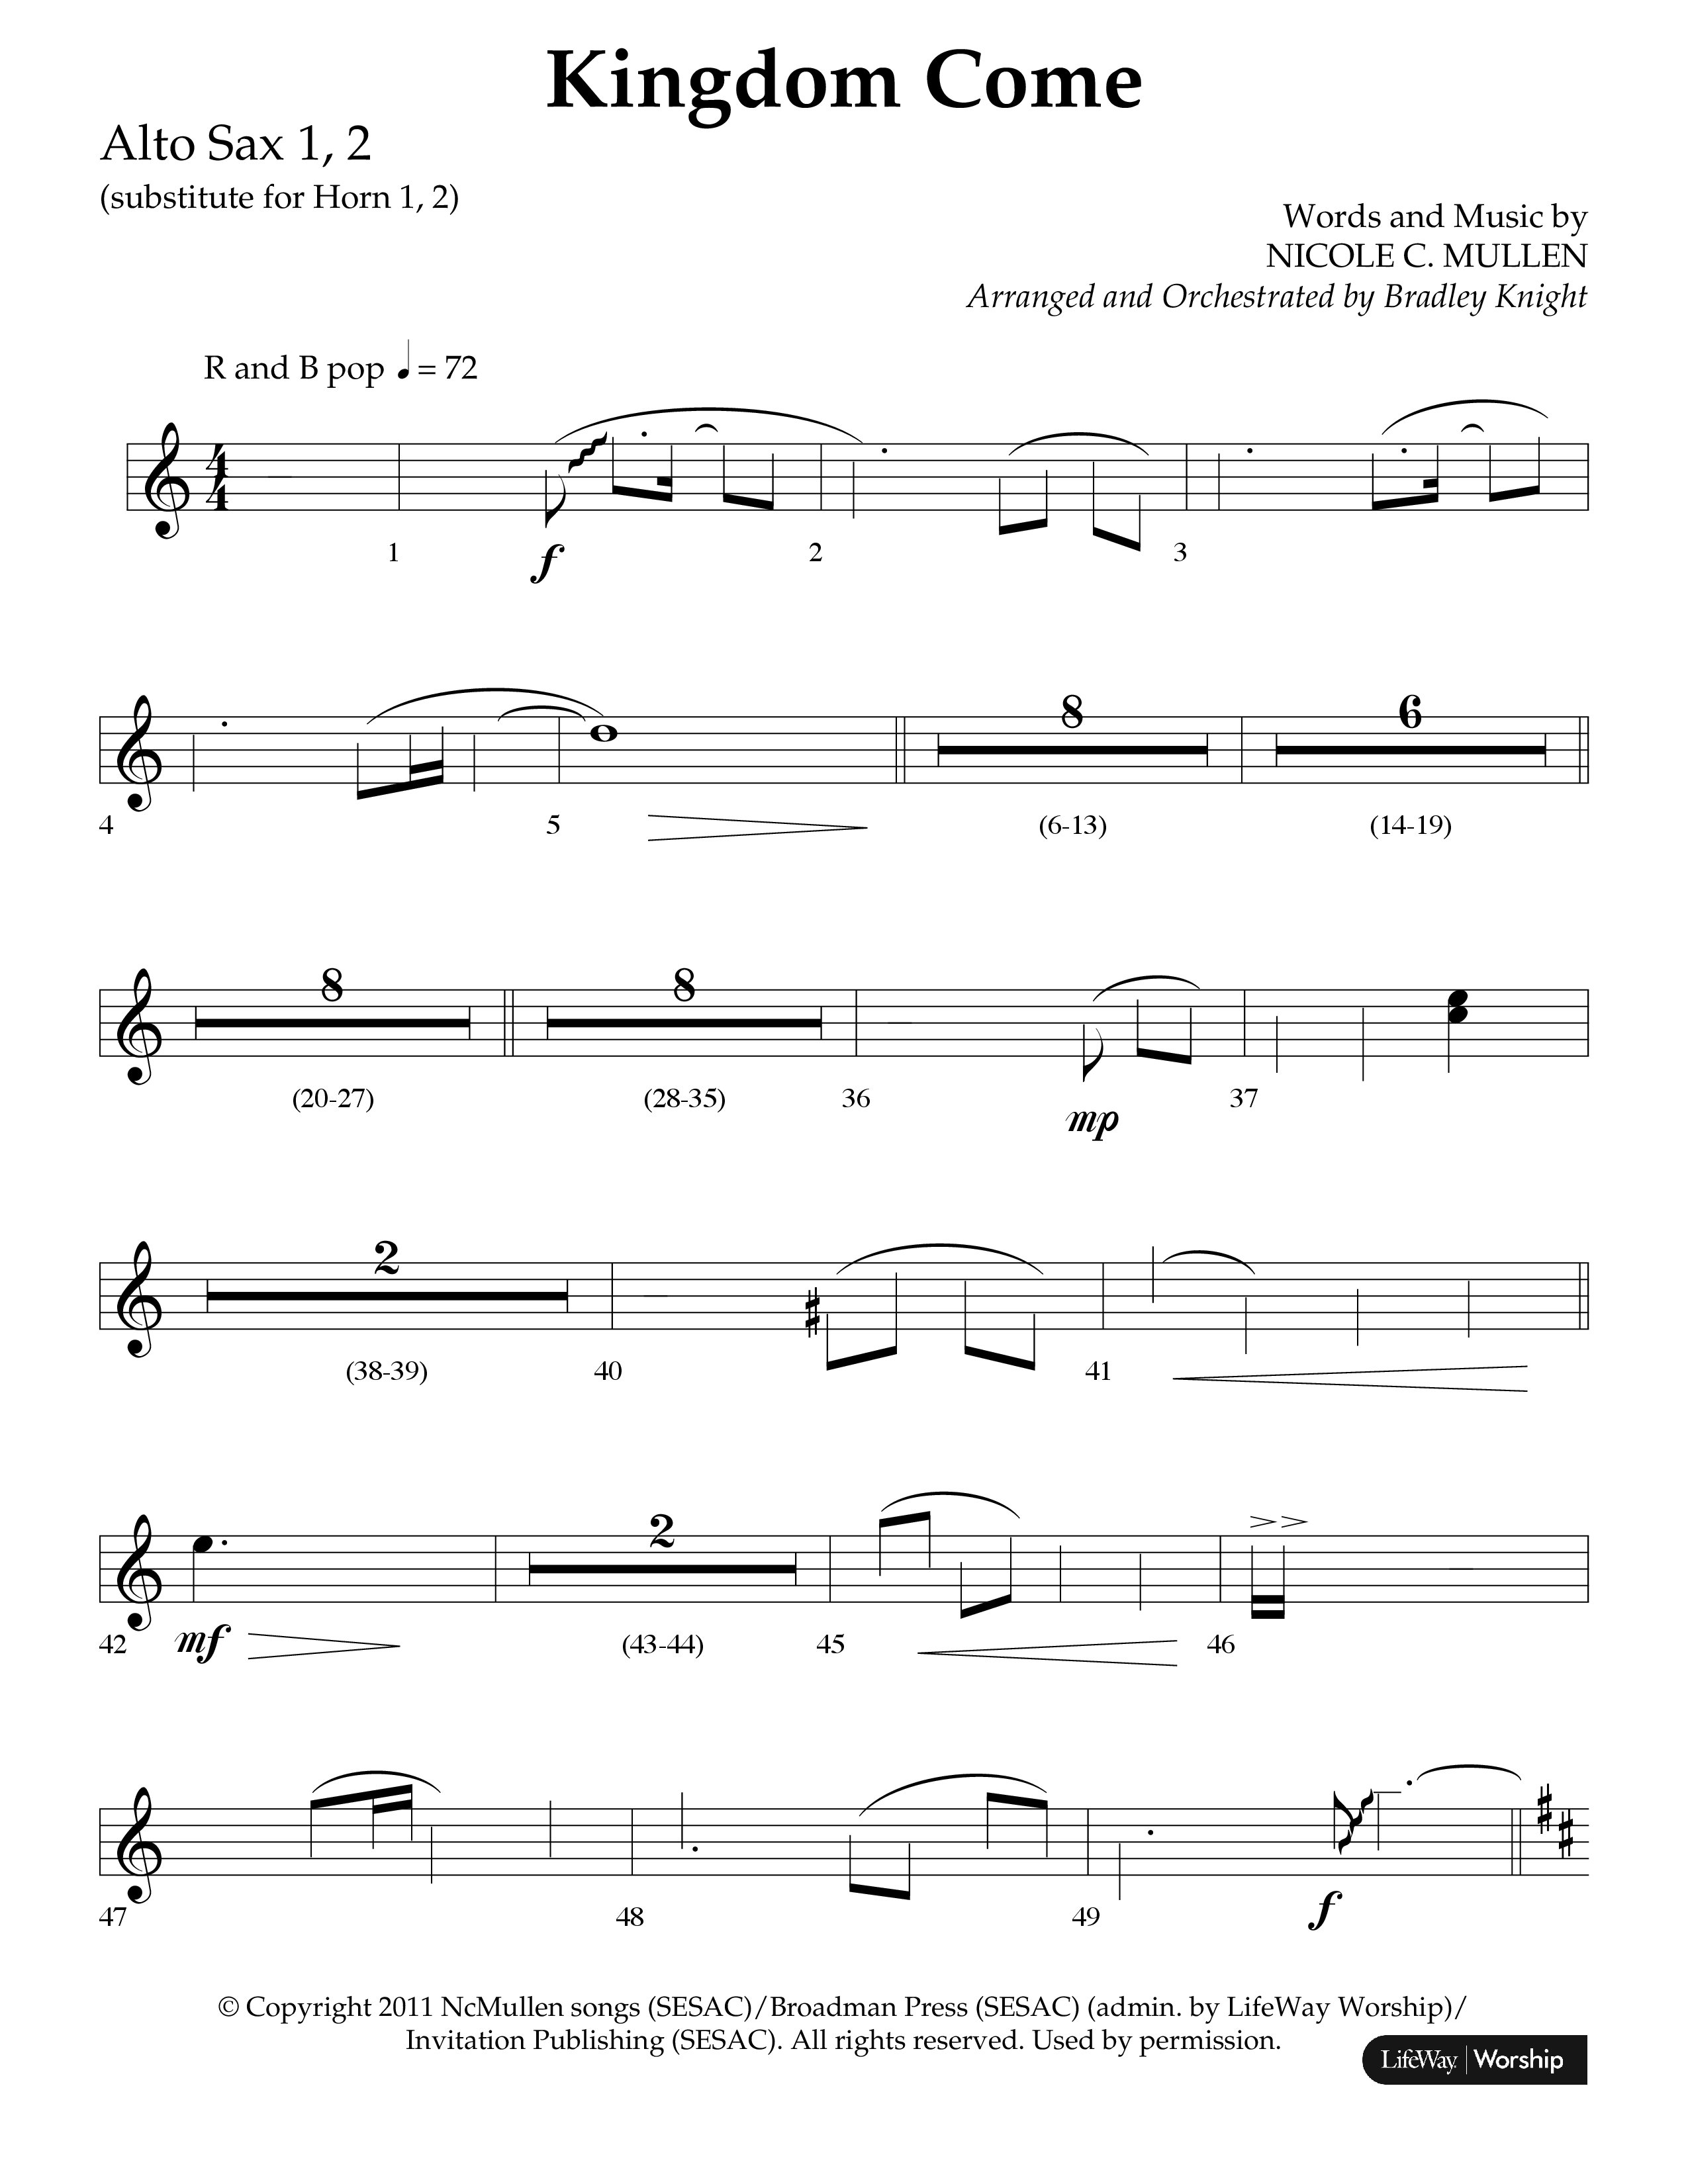 Kingdom Come (Choral Anthem SATB) Alto Sax 1/2 (Lifeway Choral / Arr. Bradley Knight)